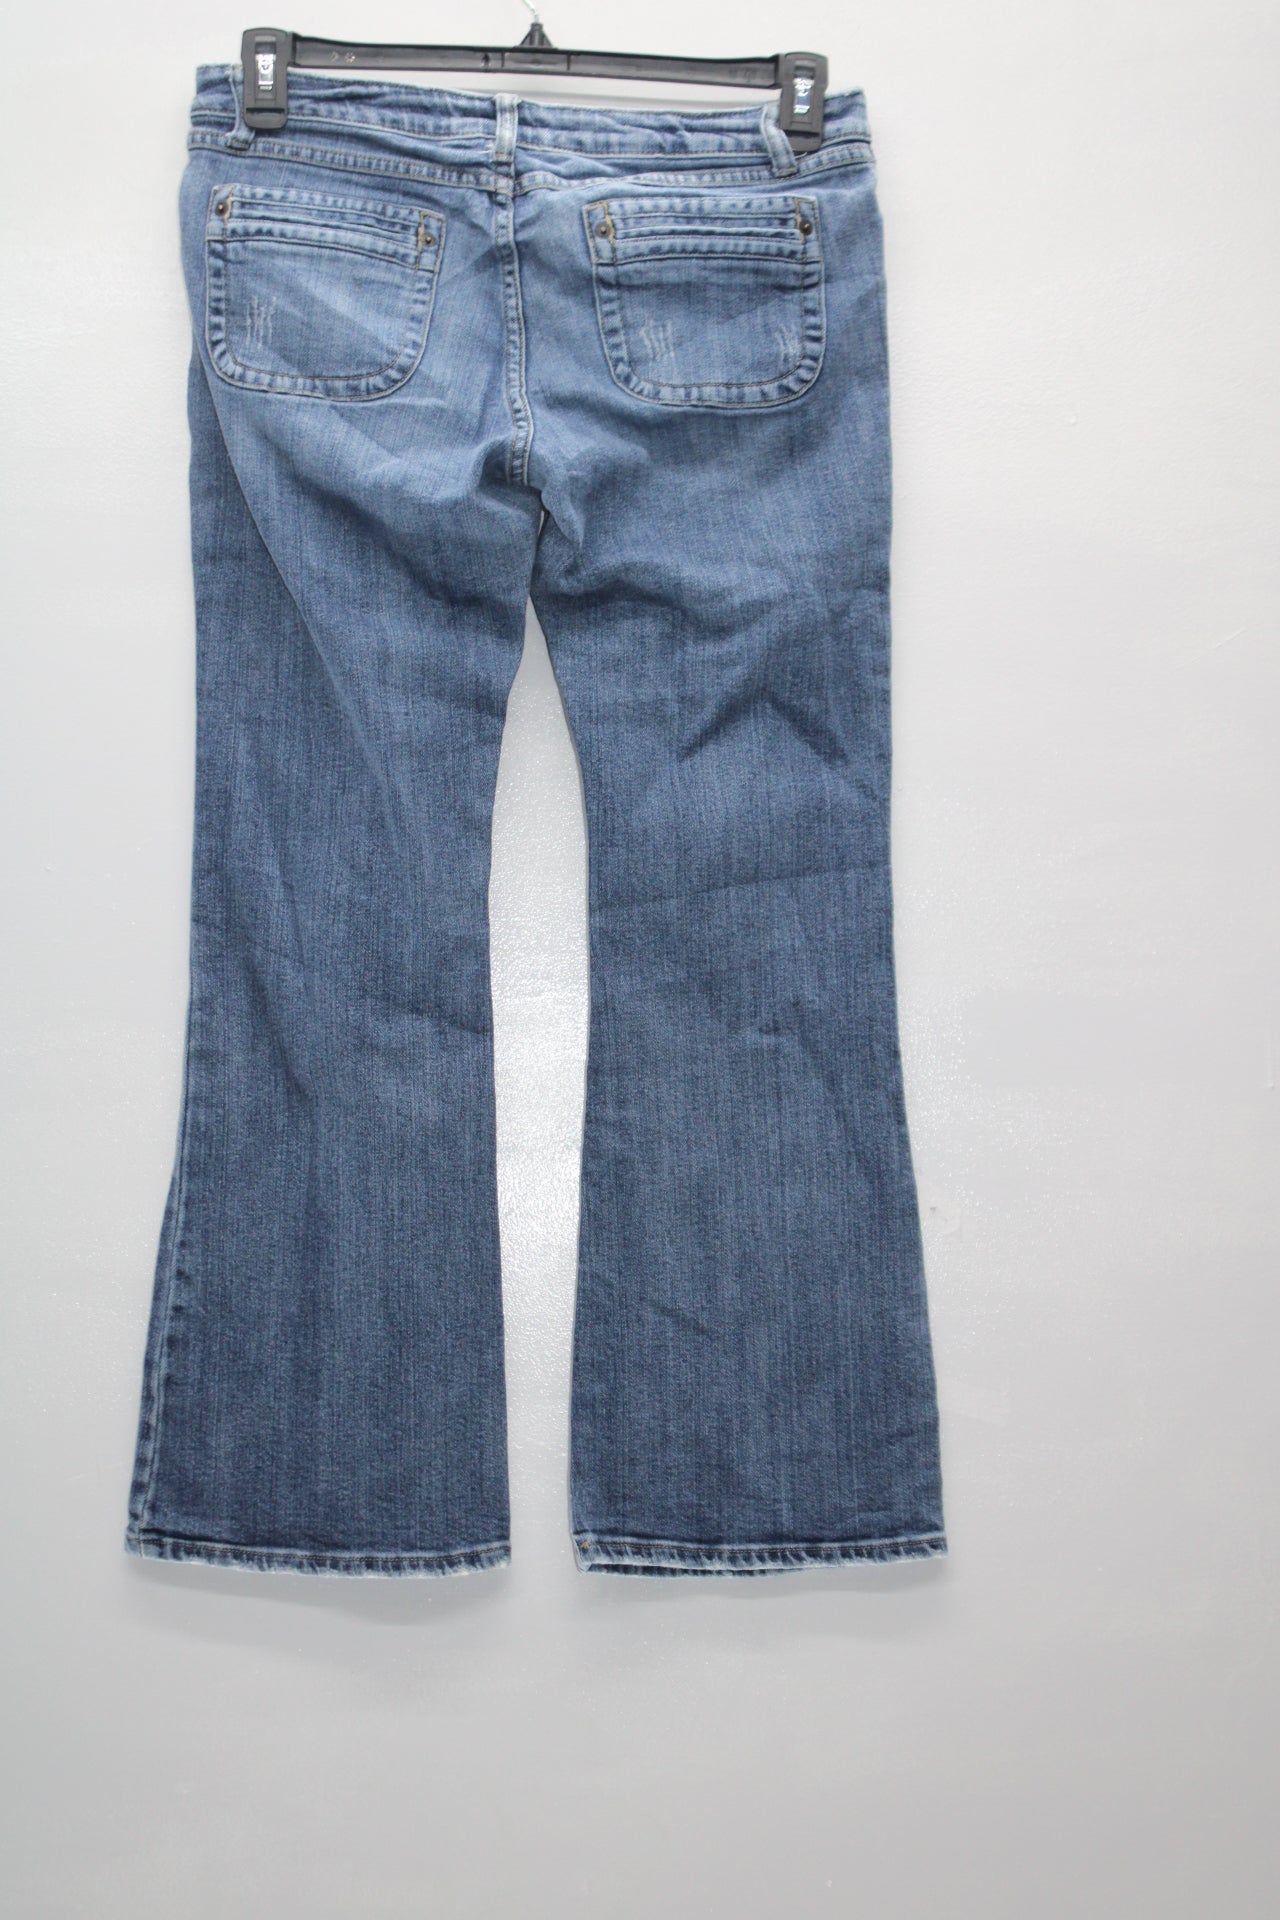 Aeropostale Women's Jeans skinny Leg Blue 9/10S Pre-Owned